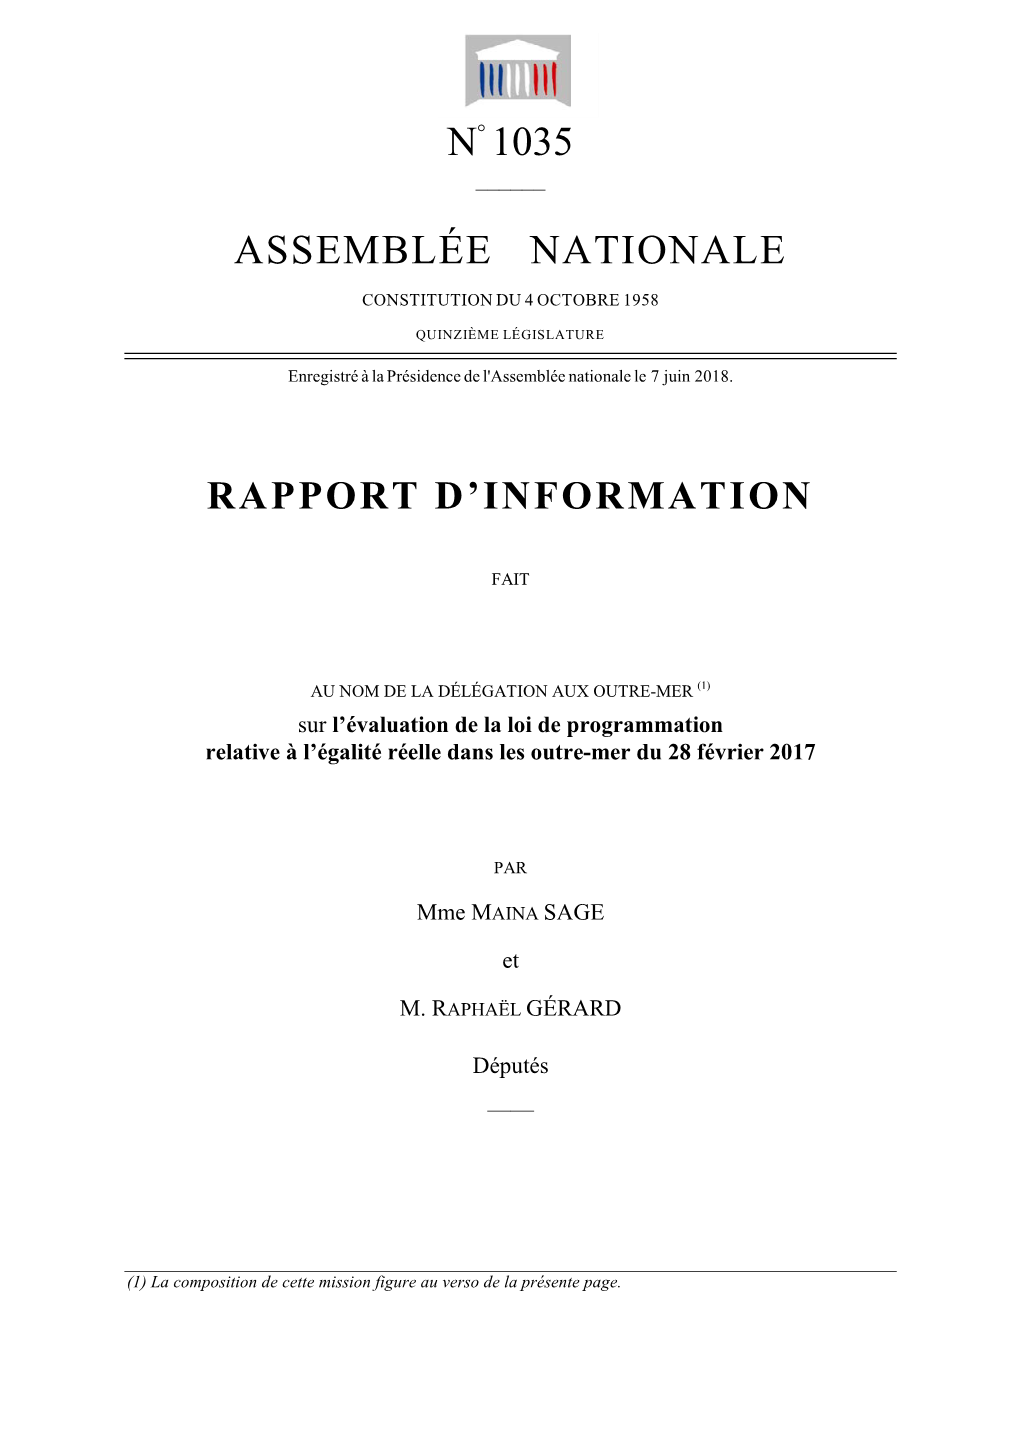 N° 1035 Assemblée Nationale